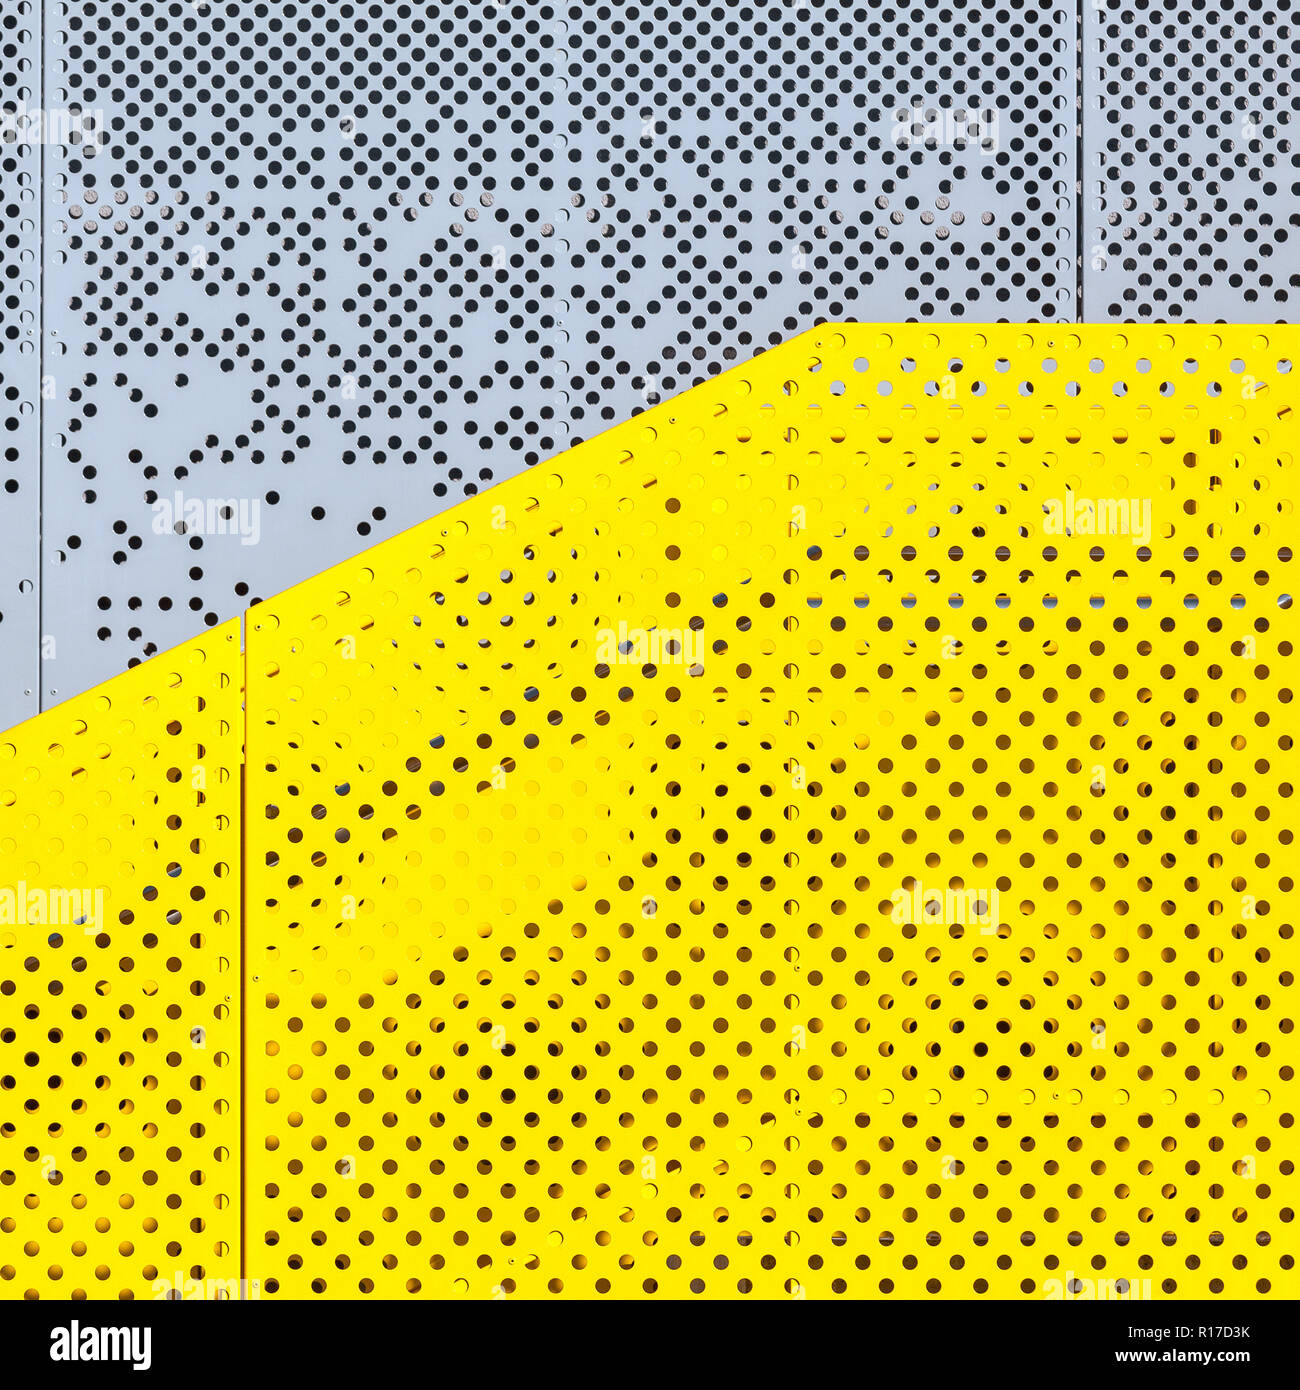 Gris y amarillo industrial metal perforado, fondo abstracto textura punteada Foto de stock